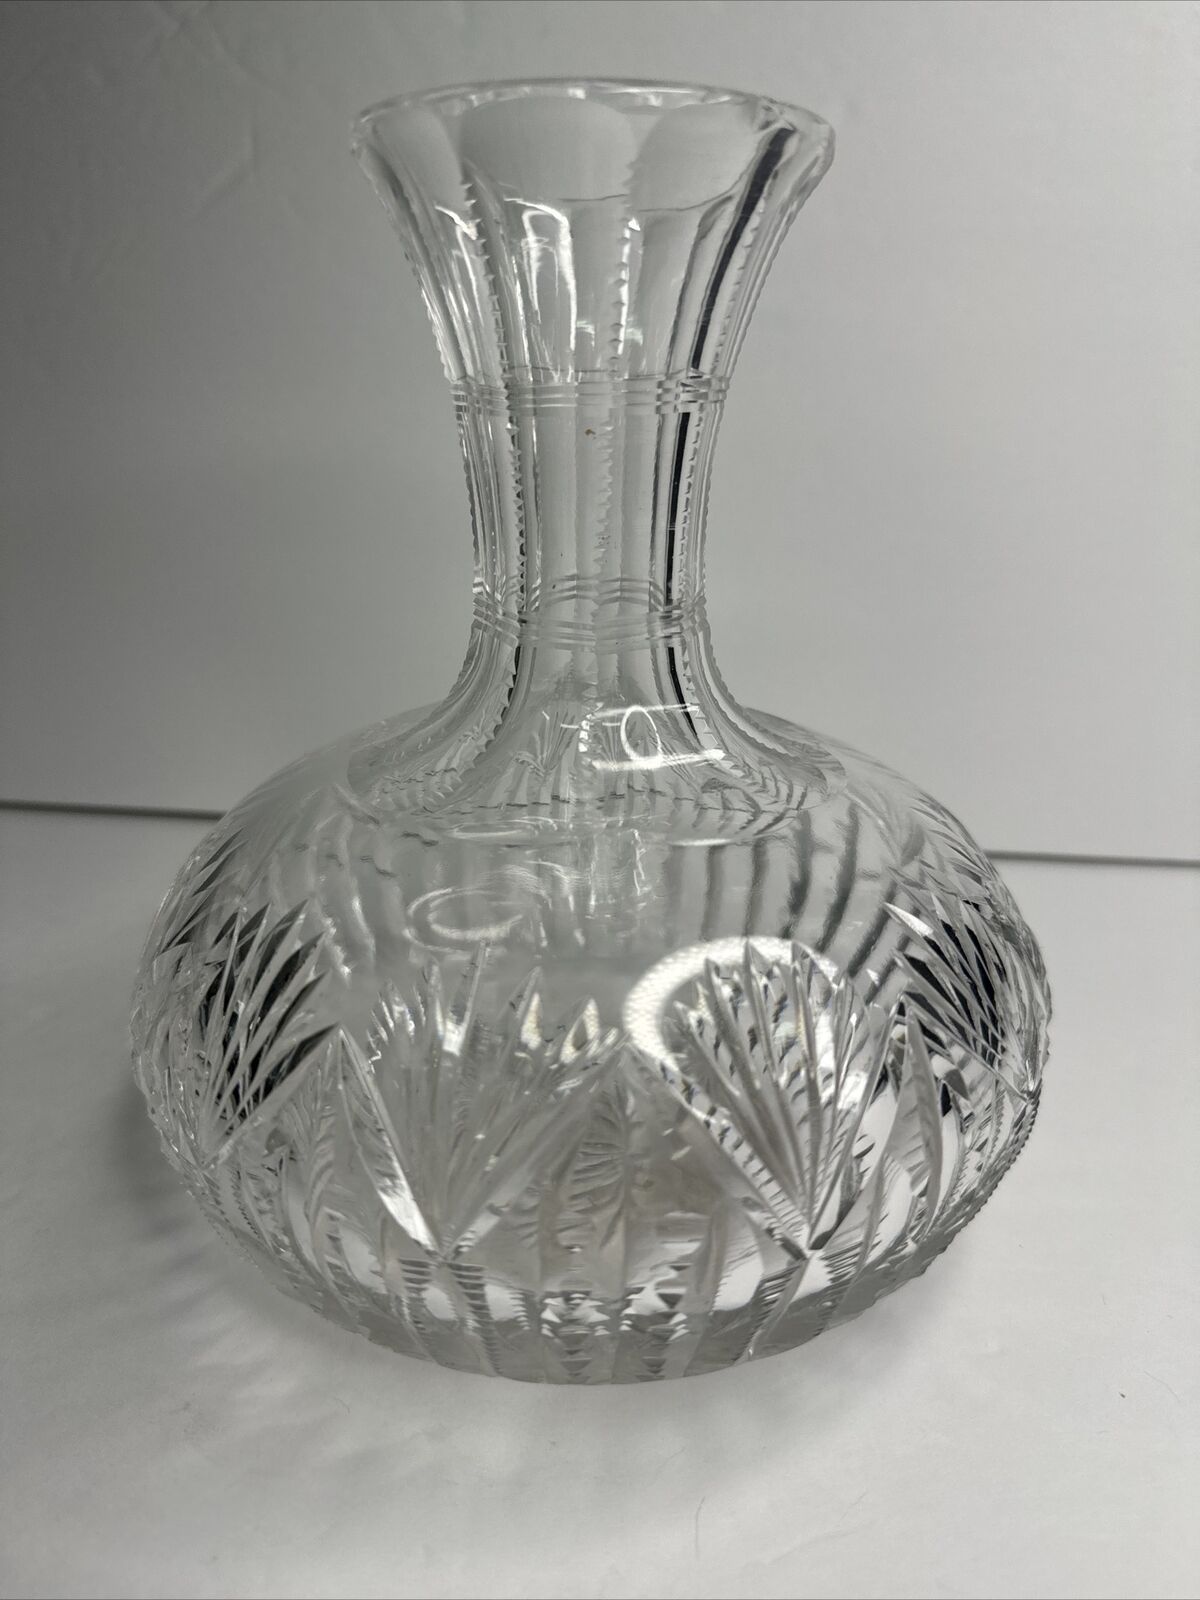 Stunning Vintage Cut Crystal Decanter Carafe Vase